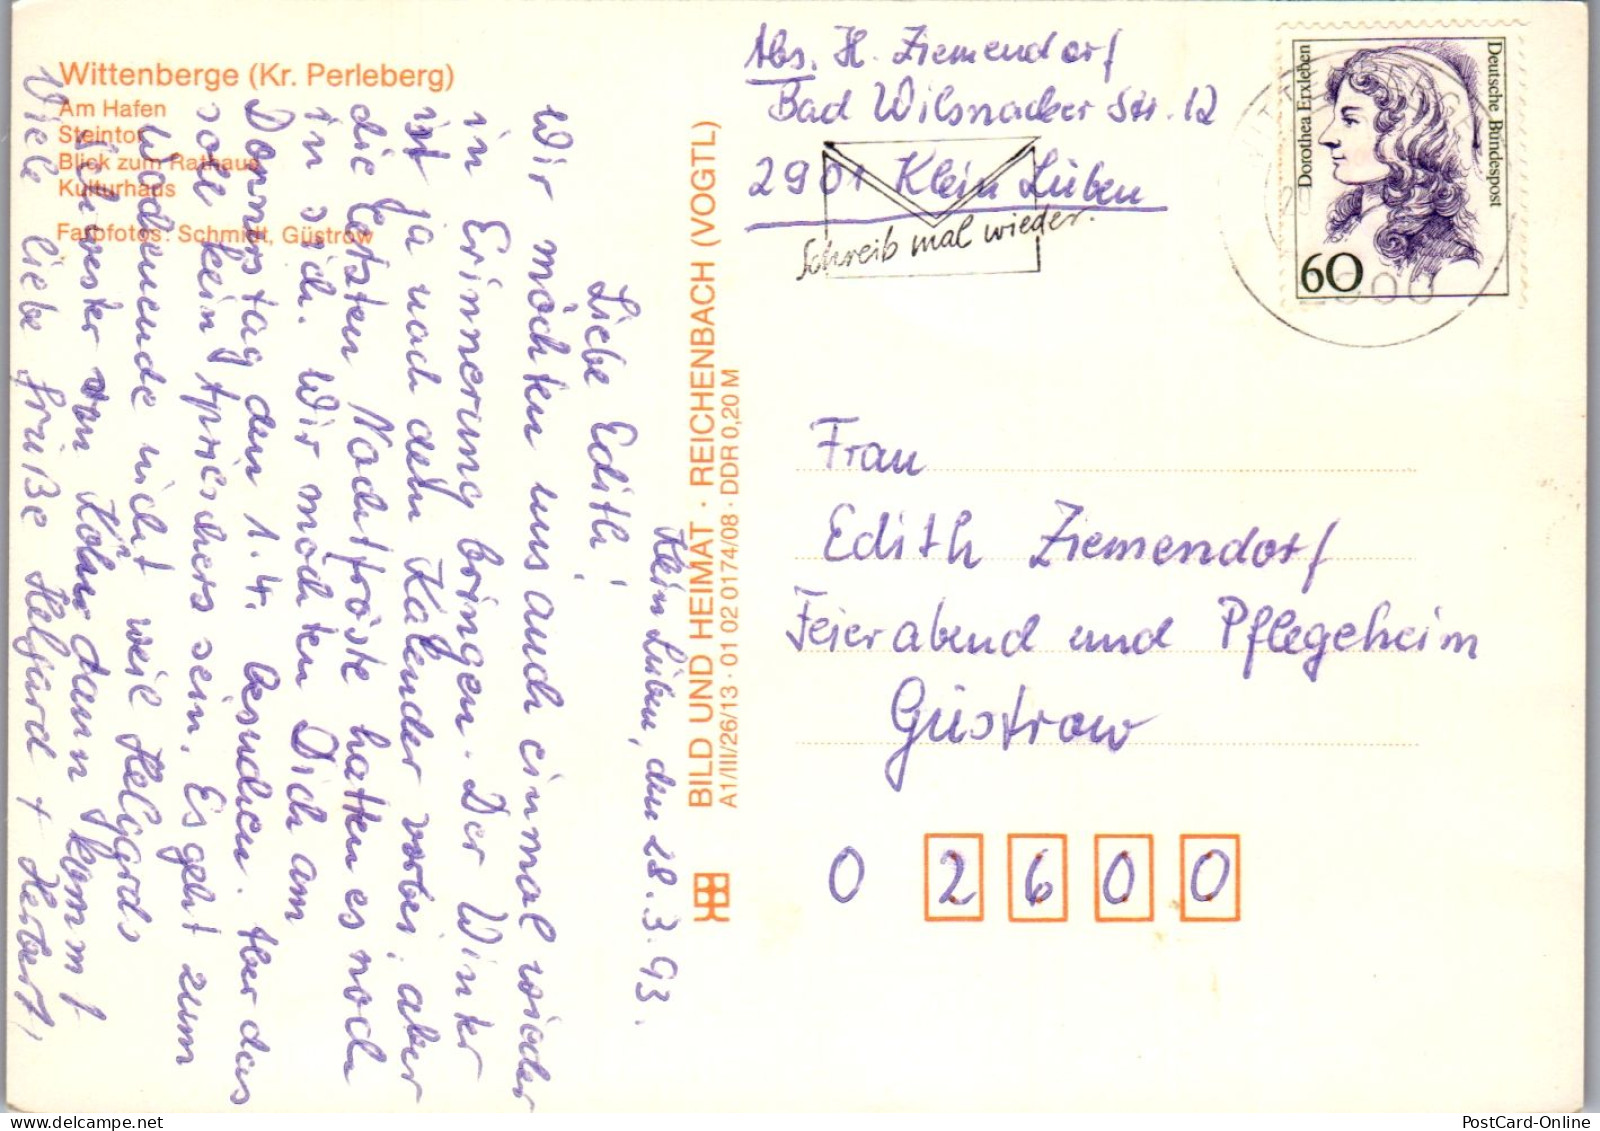 43899 - Deutschland - Wittenberge , Kr. Perleberg , Am Hafen , Steintor , Kultirhaus , Mehrbildkarte - Gelaufen 1993 - Wittenberge